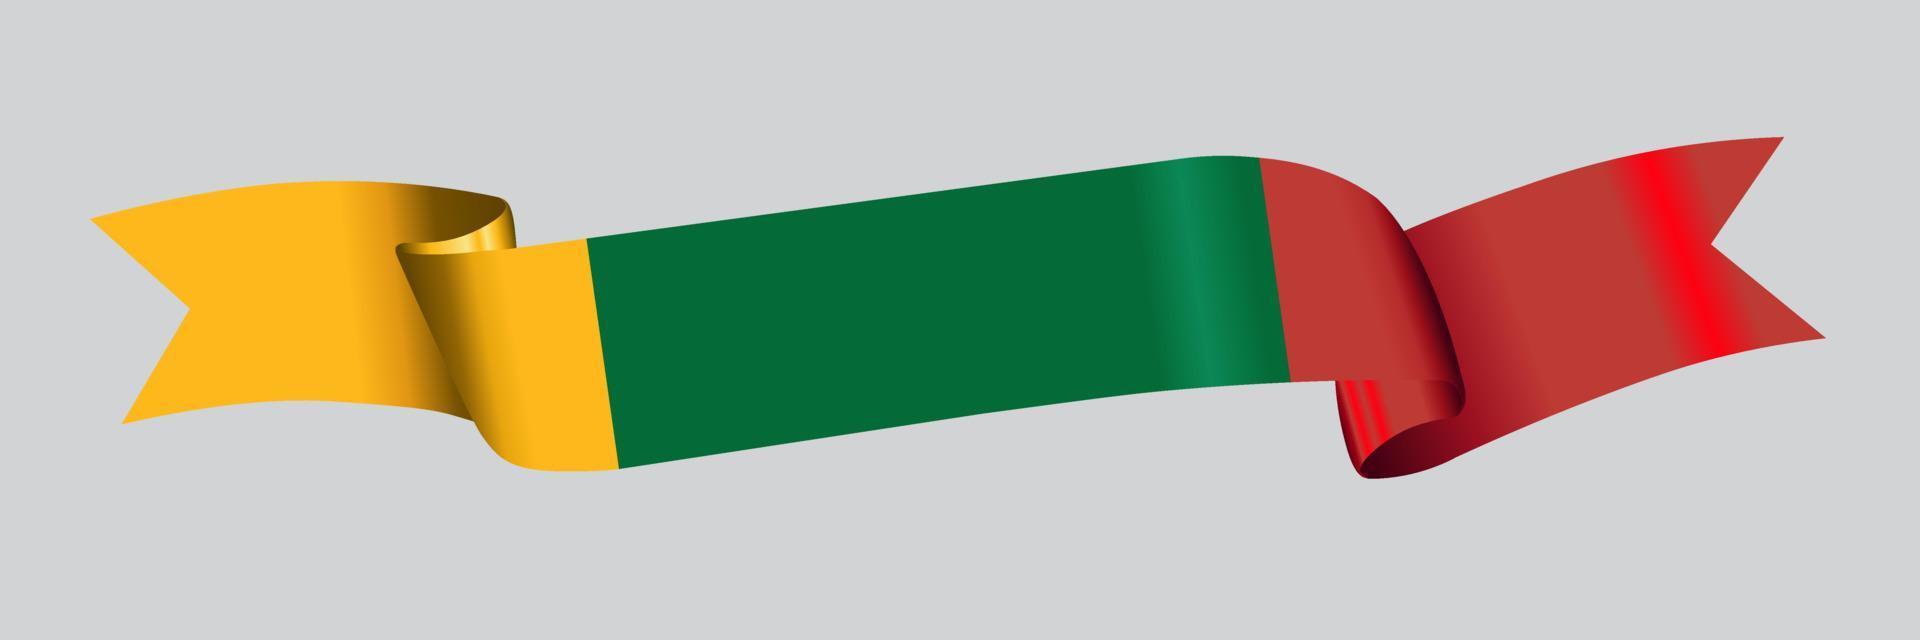 Bandeira 3D da Lituânia na faixa de opções. vetor